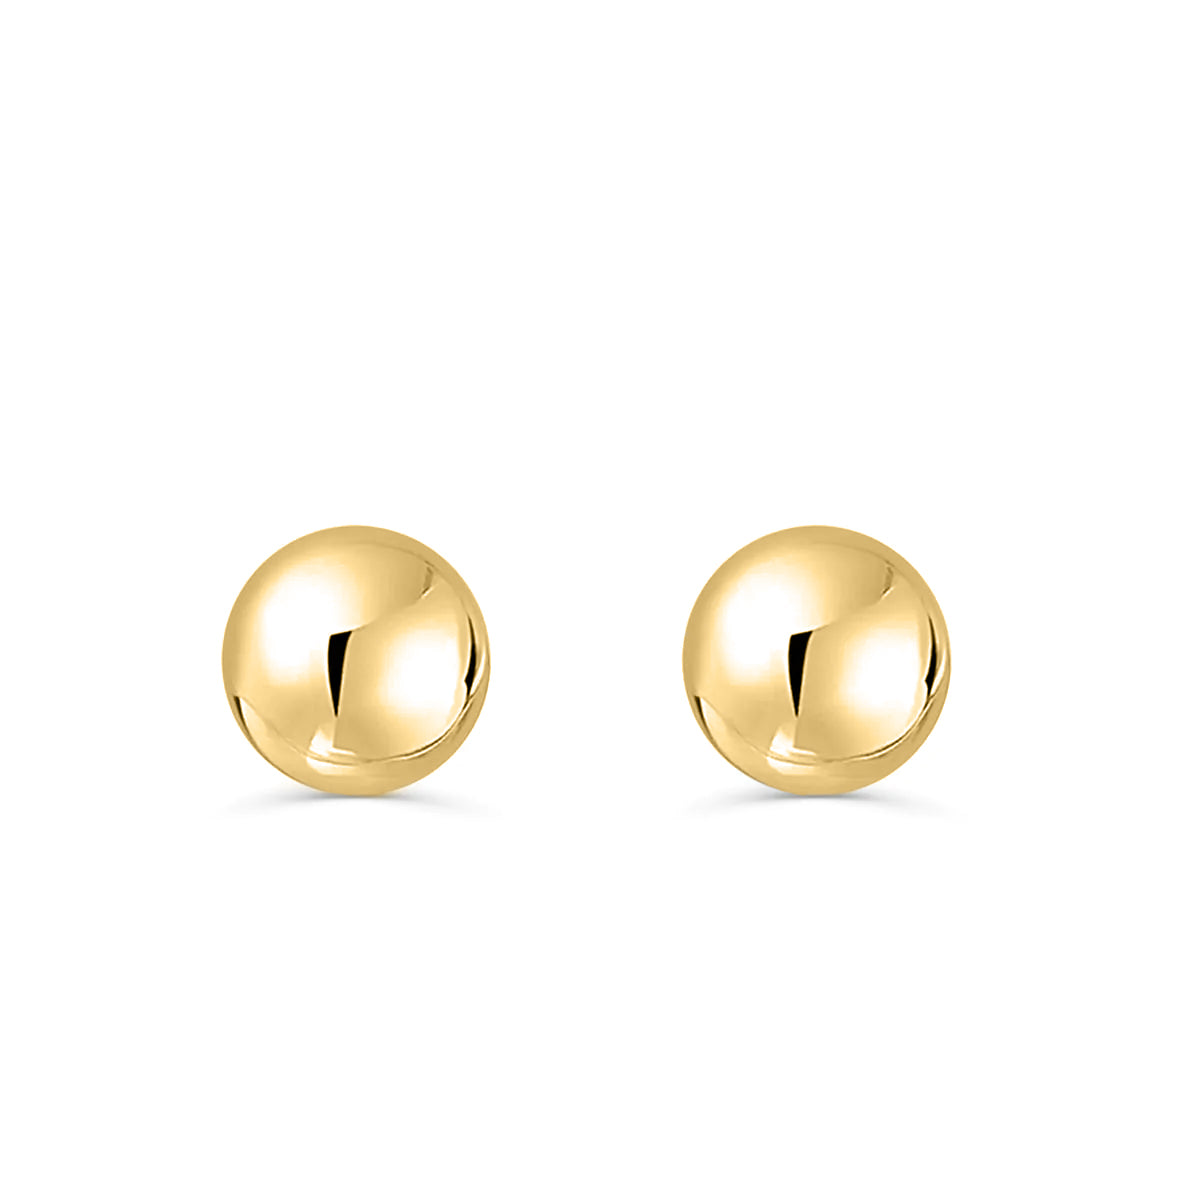 Gold ball stud earrings